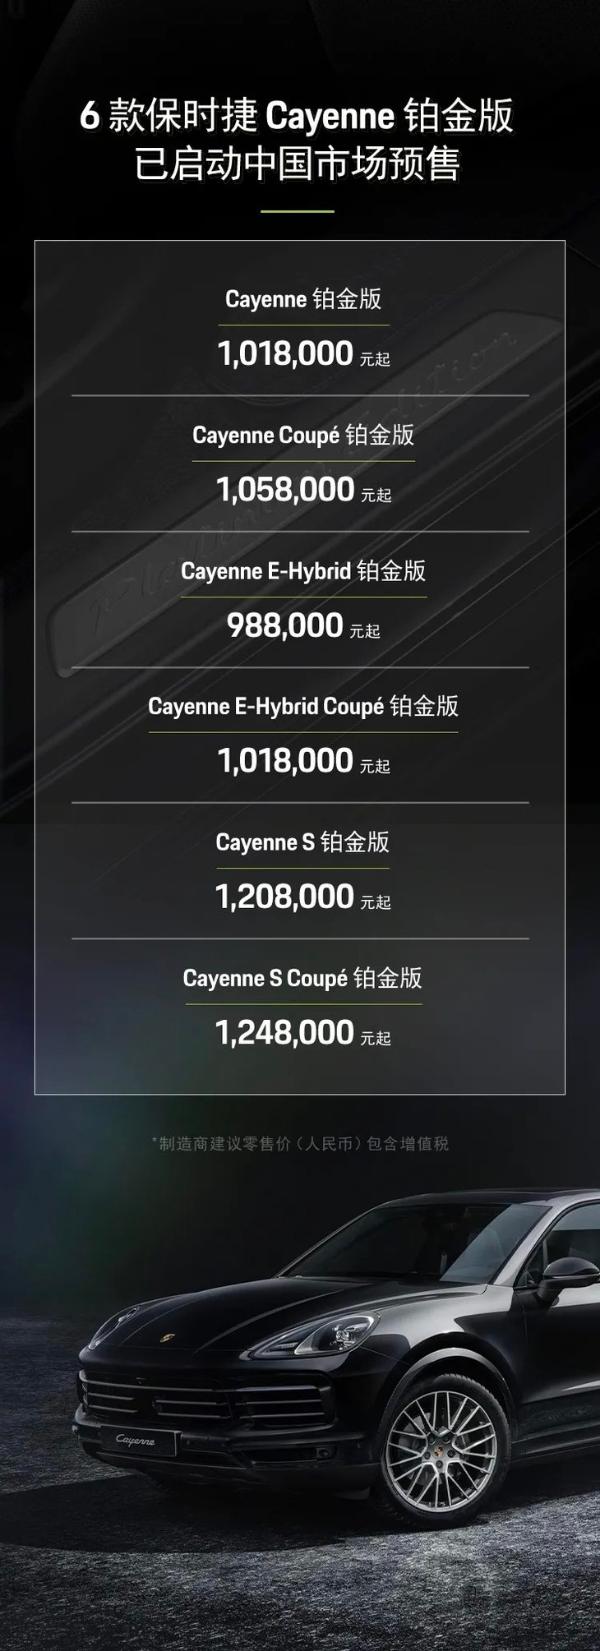 保时捷Cayenne铂金版开启预售 指导价98.8万元起